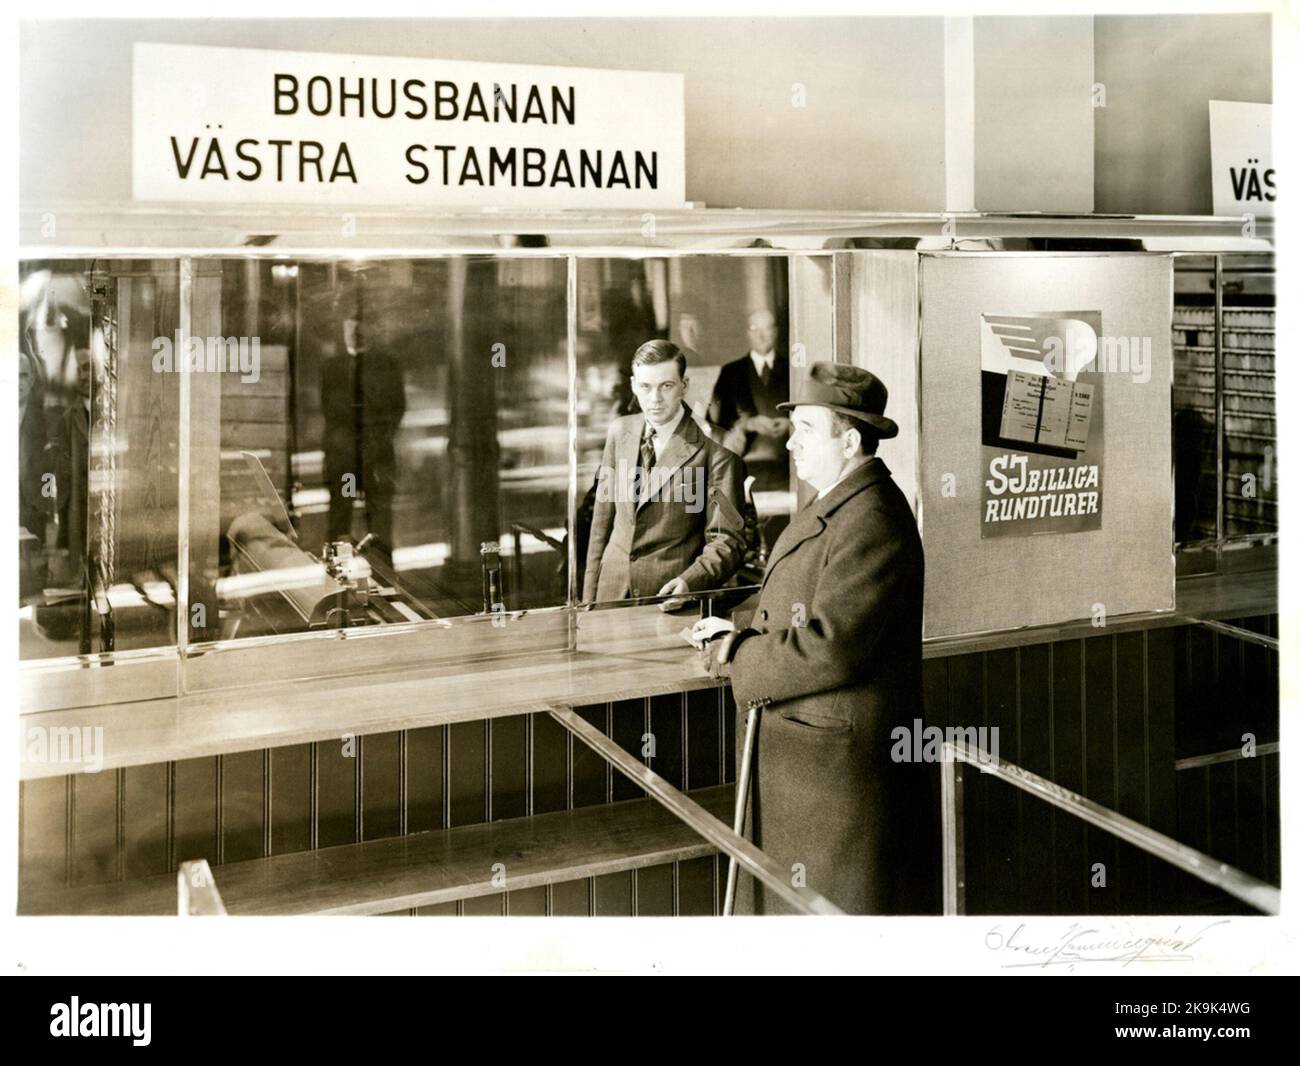 Goteborg Central. Vendita di biglietti con macchine per la stampa di biglietti. Foto Stock